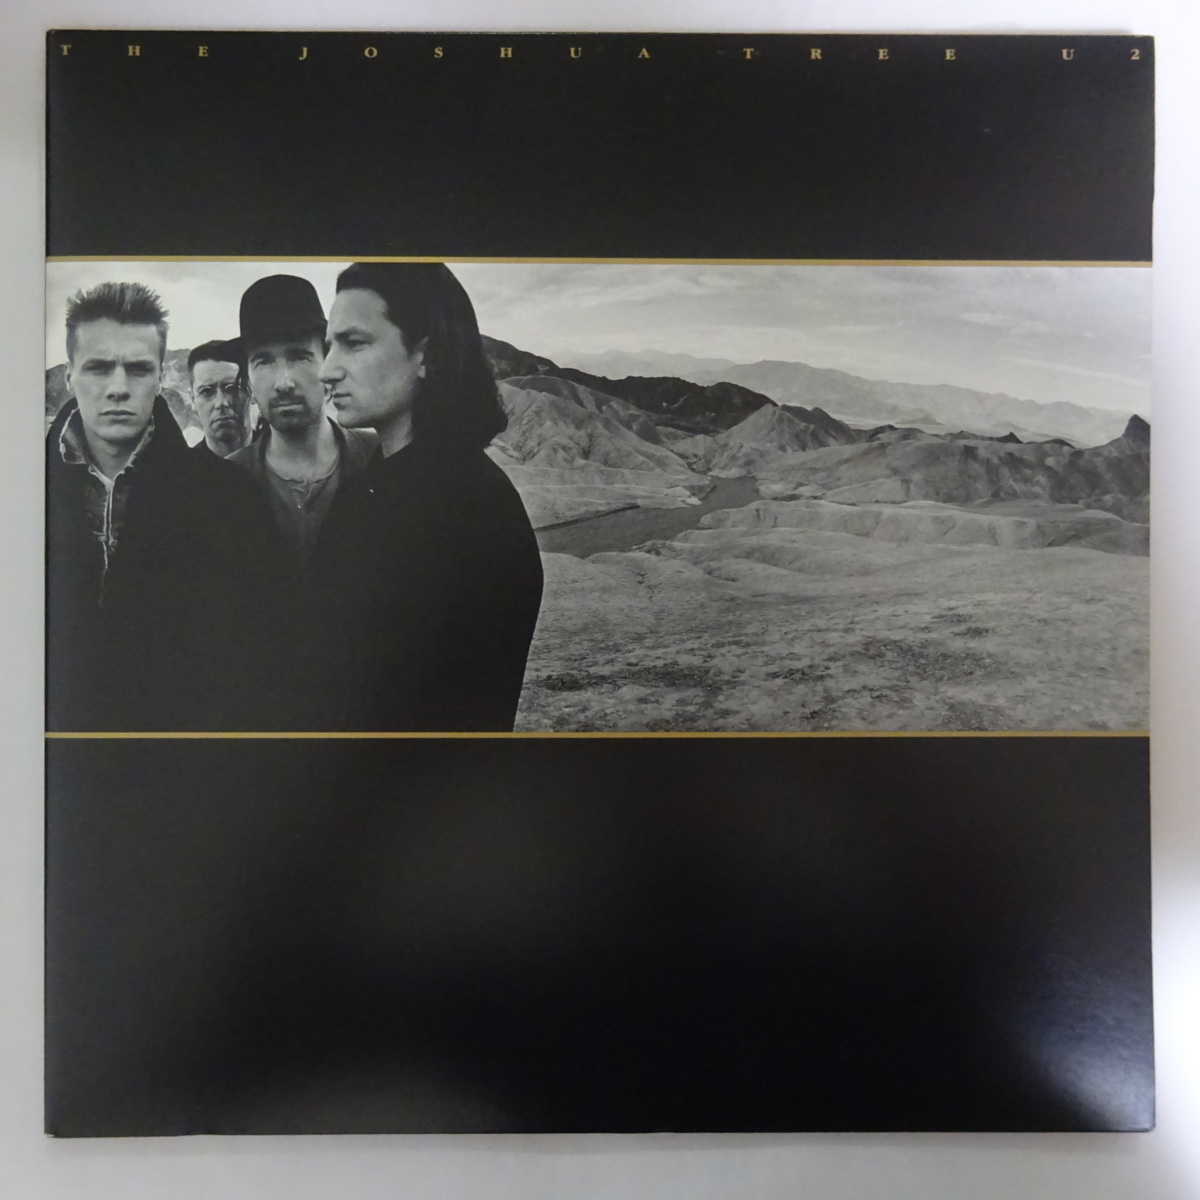 初売り】 U2 – The Joshua Tree アナログレコード LP confmax.com.br